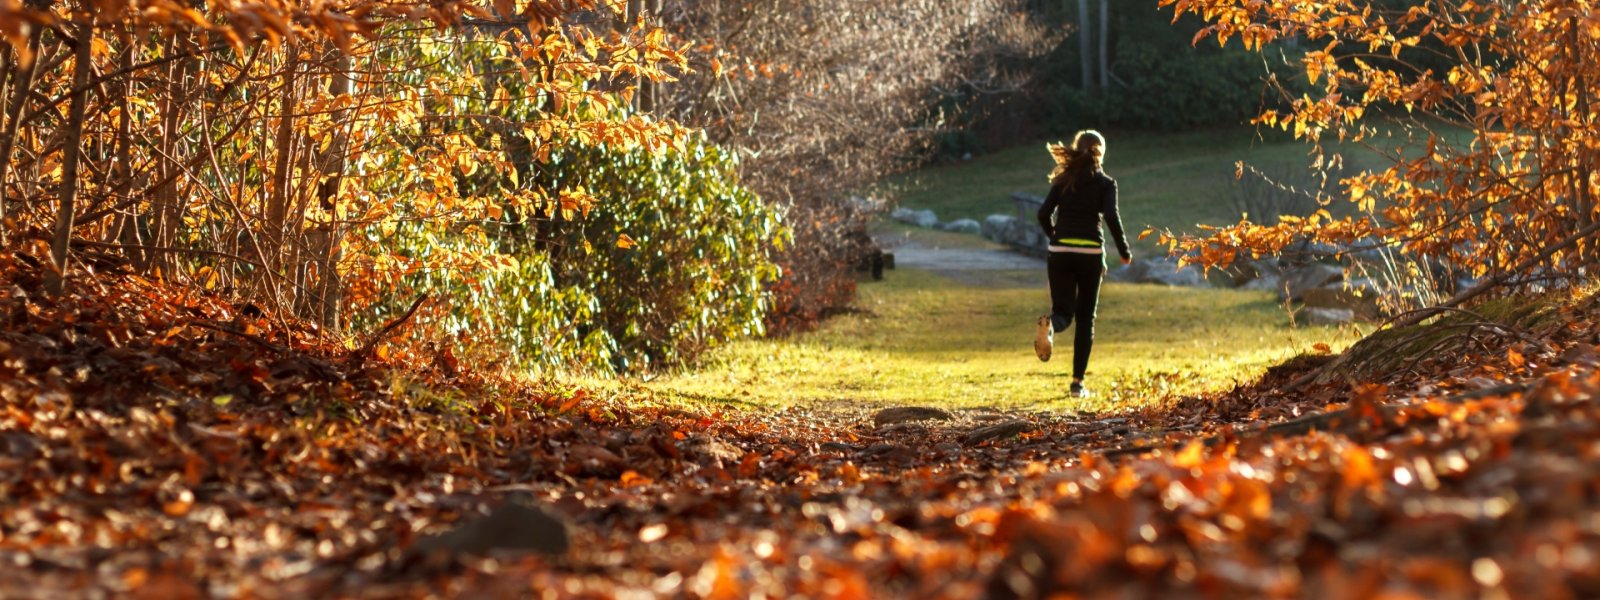 Kilka wskazówek dotyczących biegania w okresie jesienno-zimowym